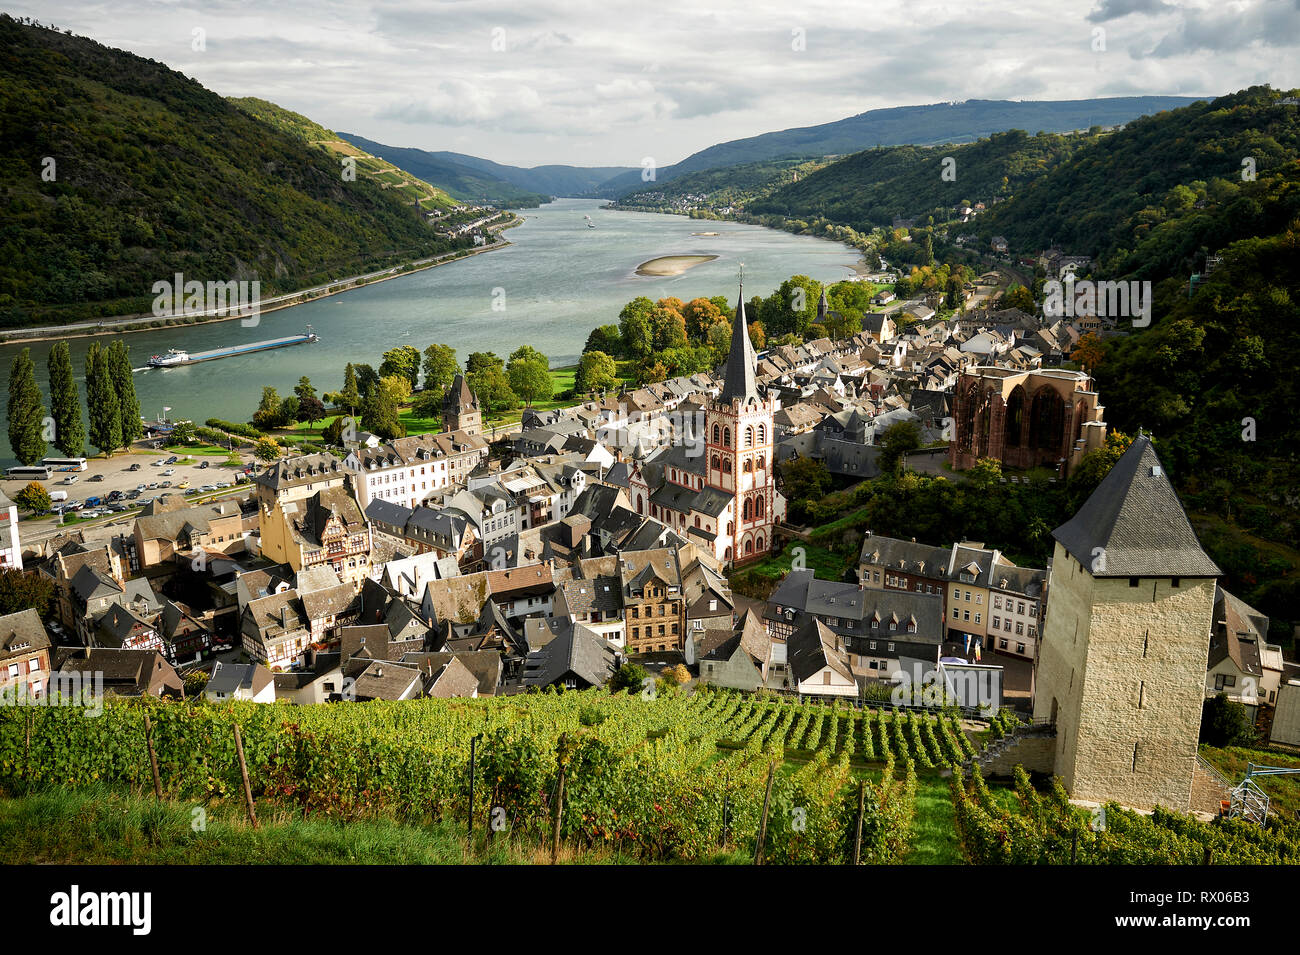 Blick auf Bacherach am Rhein von einem Weinberg aus. Stock Photo